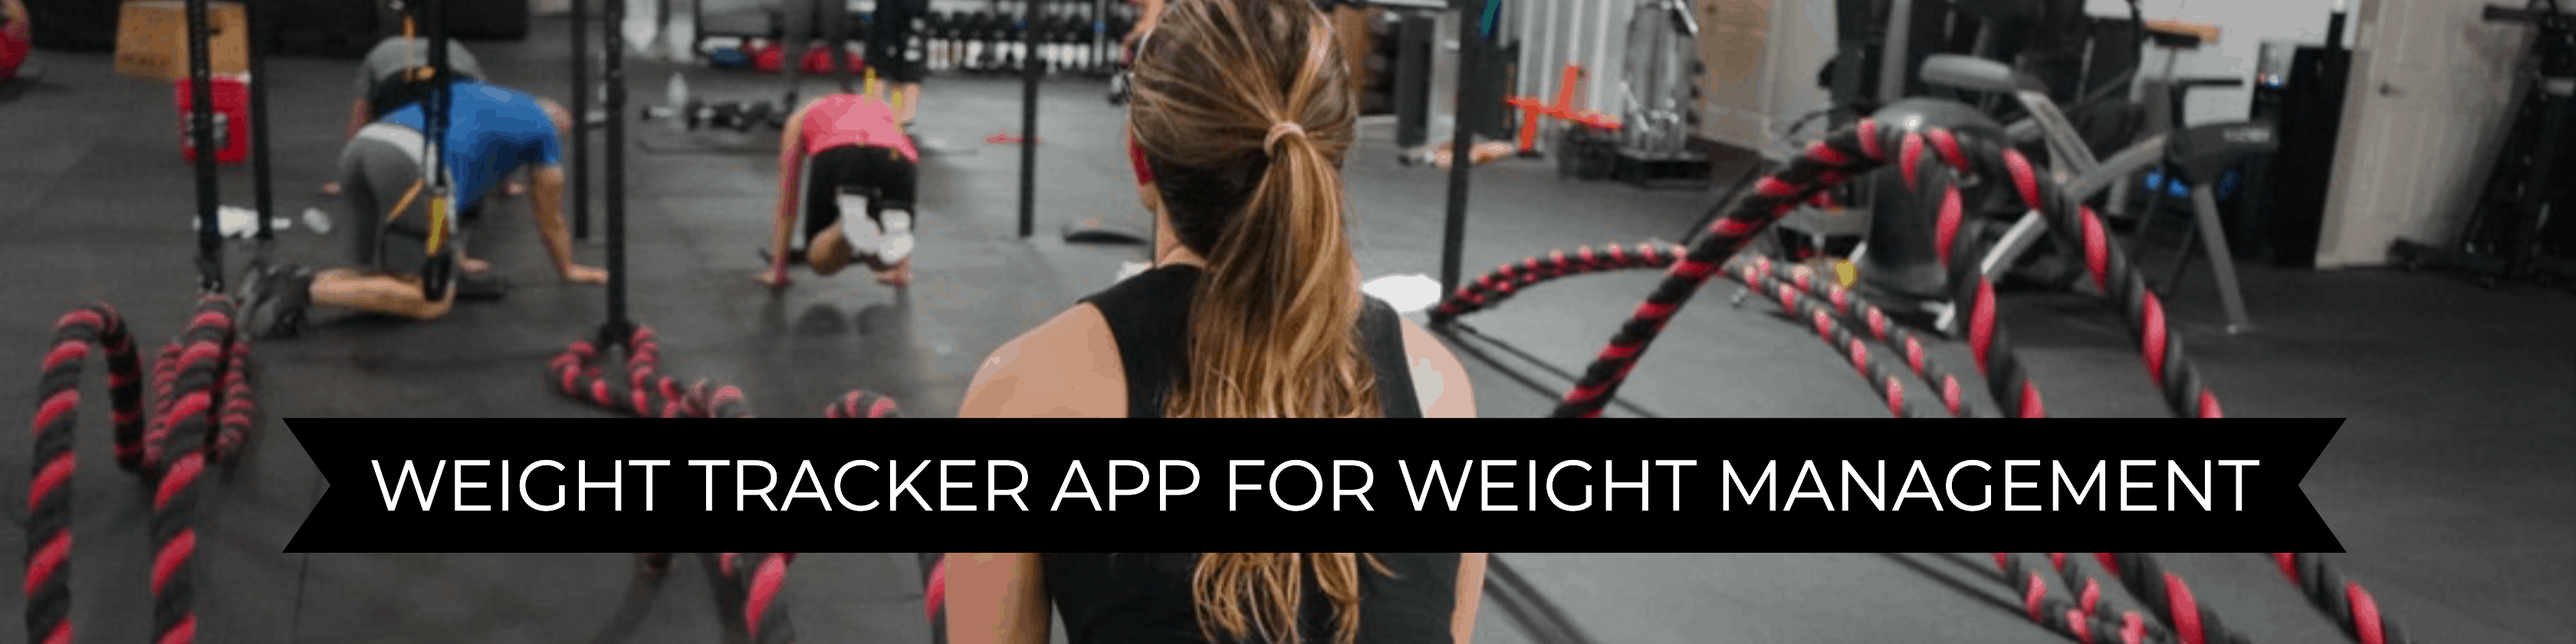 weight tracker app